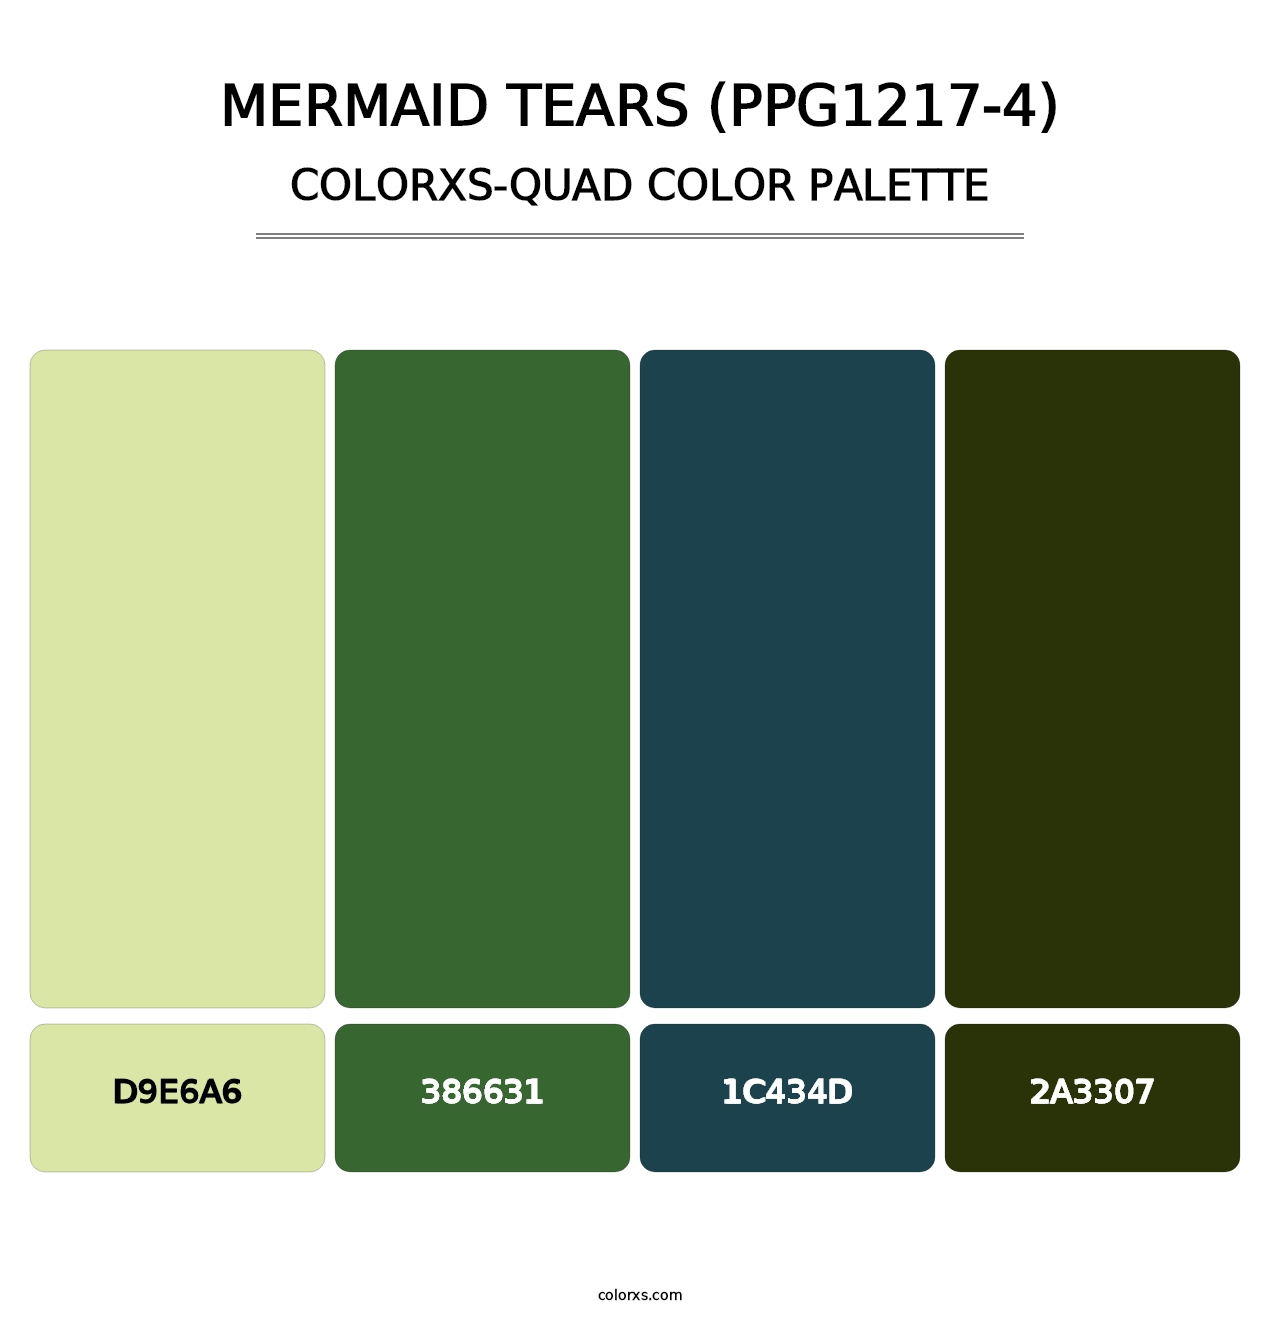 Mermaid Tears (PPG1217-4) - Colorxs Quad Palette